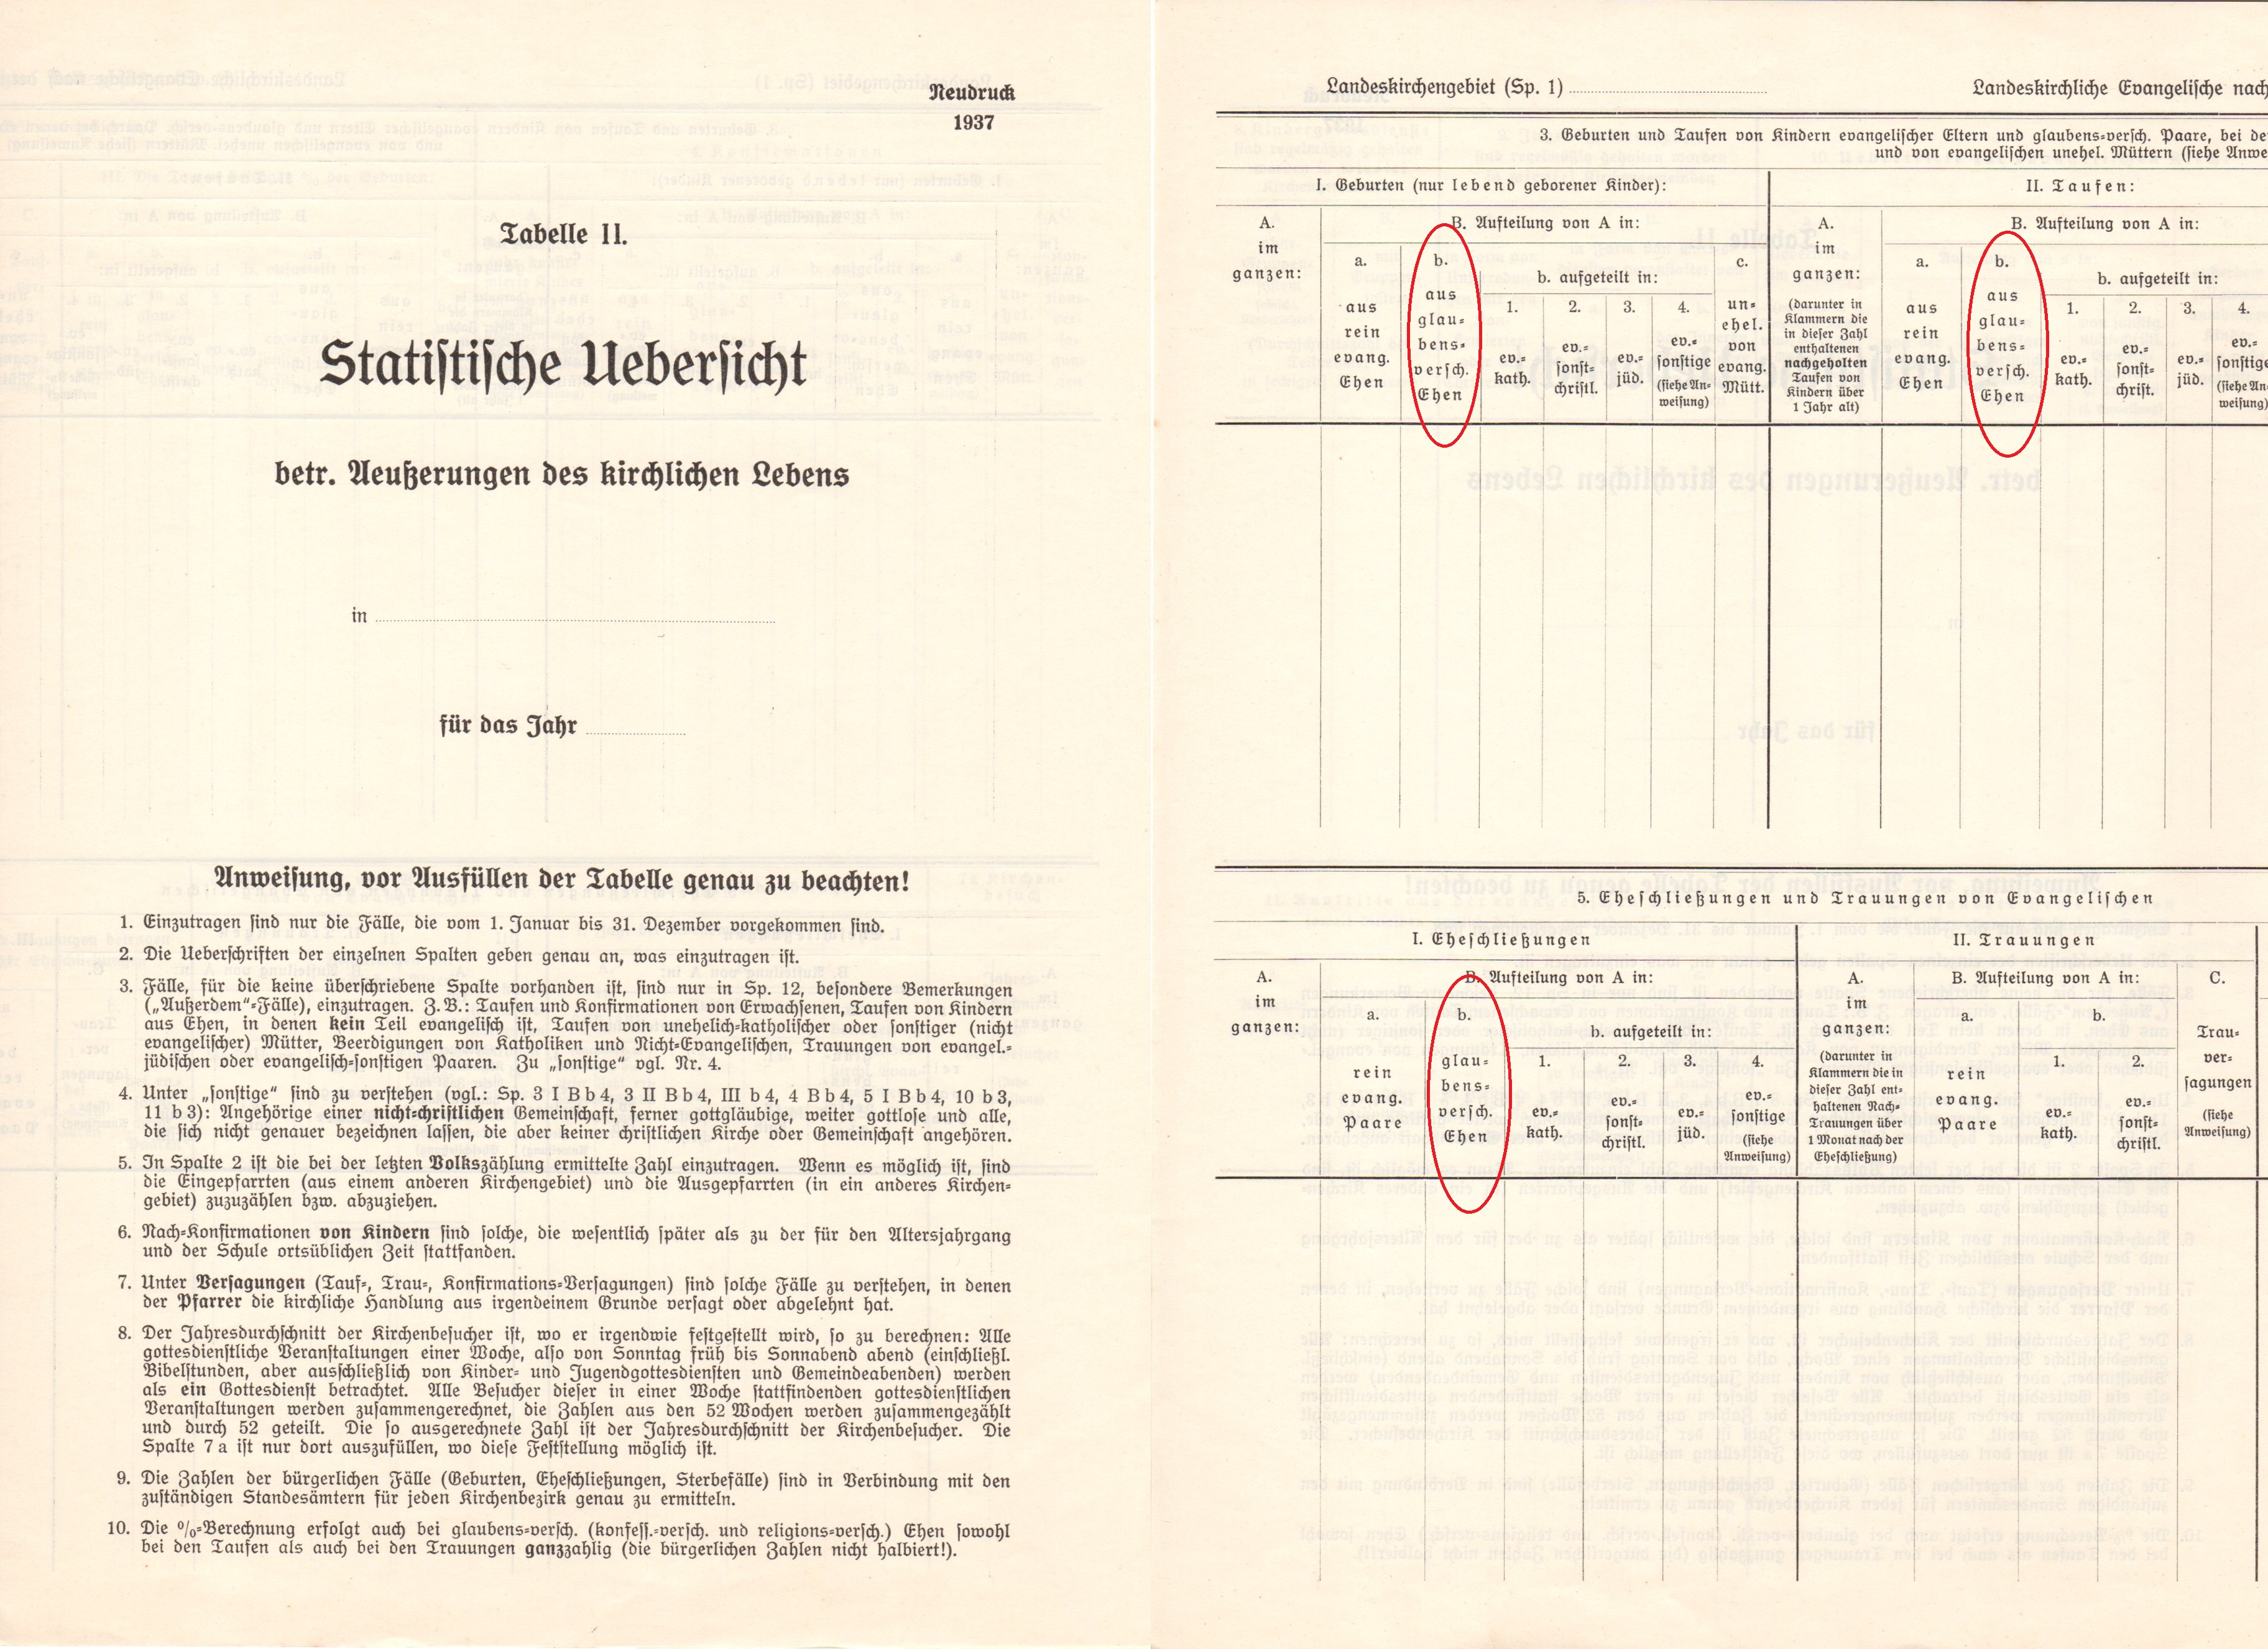 Neudruck 1937 des kirchlichen Statistikbogens mit dem vom NS-Regime favorisierten Begriff der "glaubensverschiedenen Ehe".